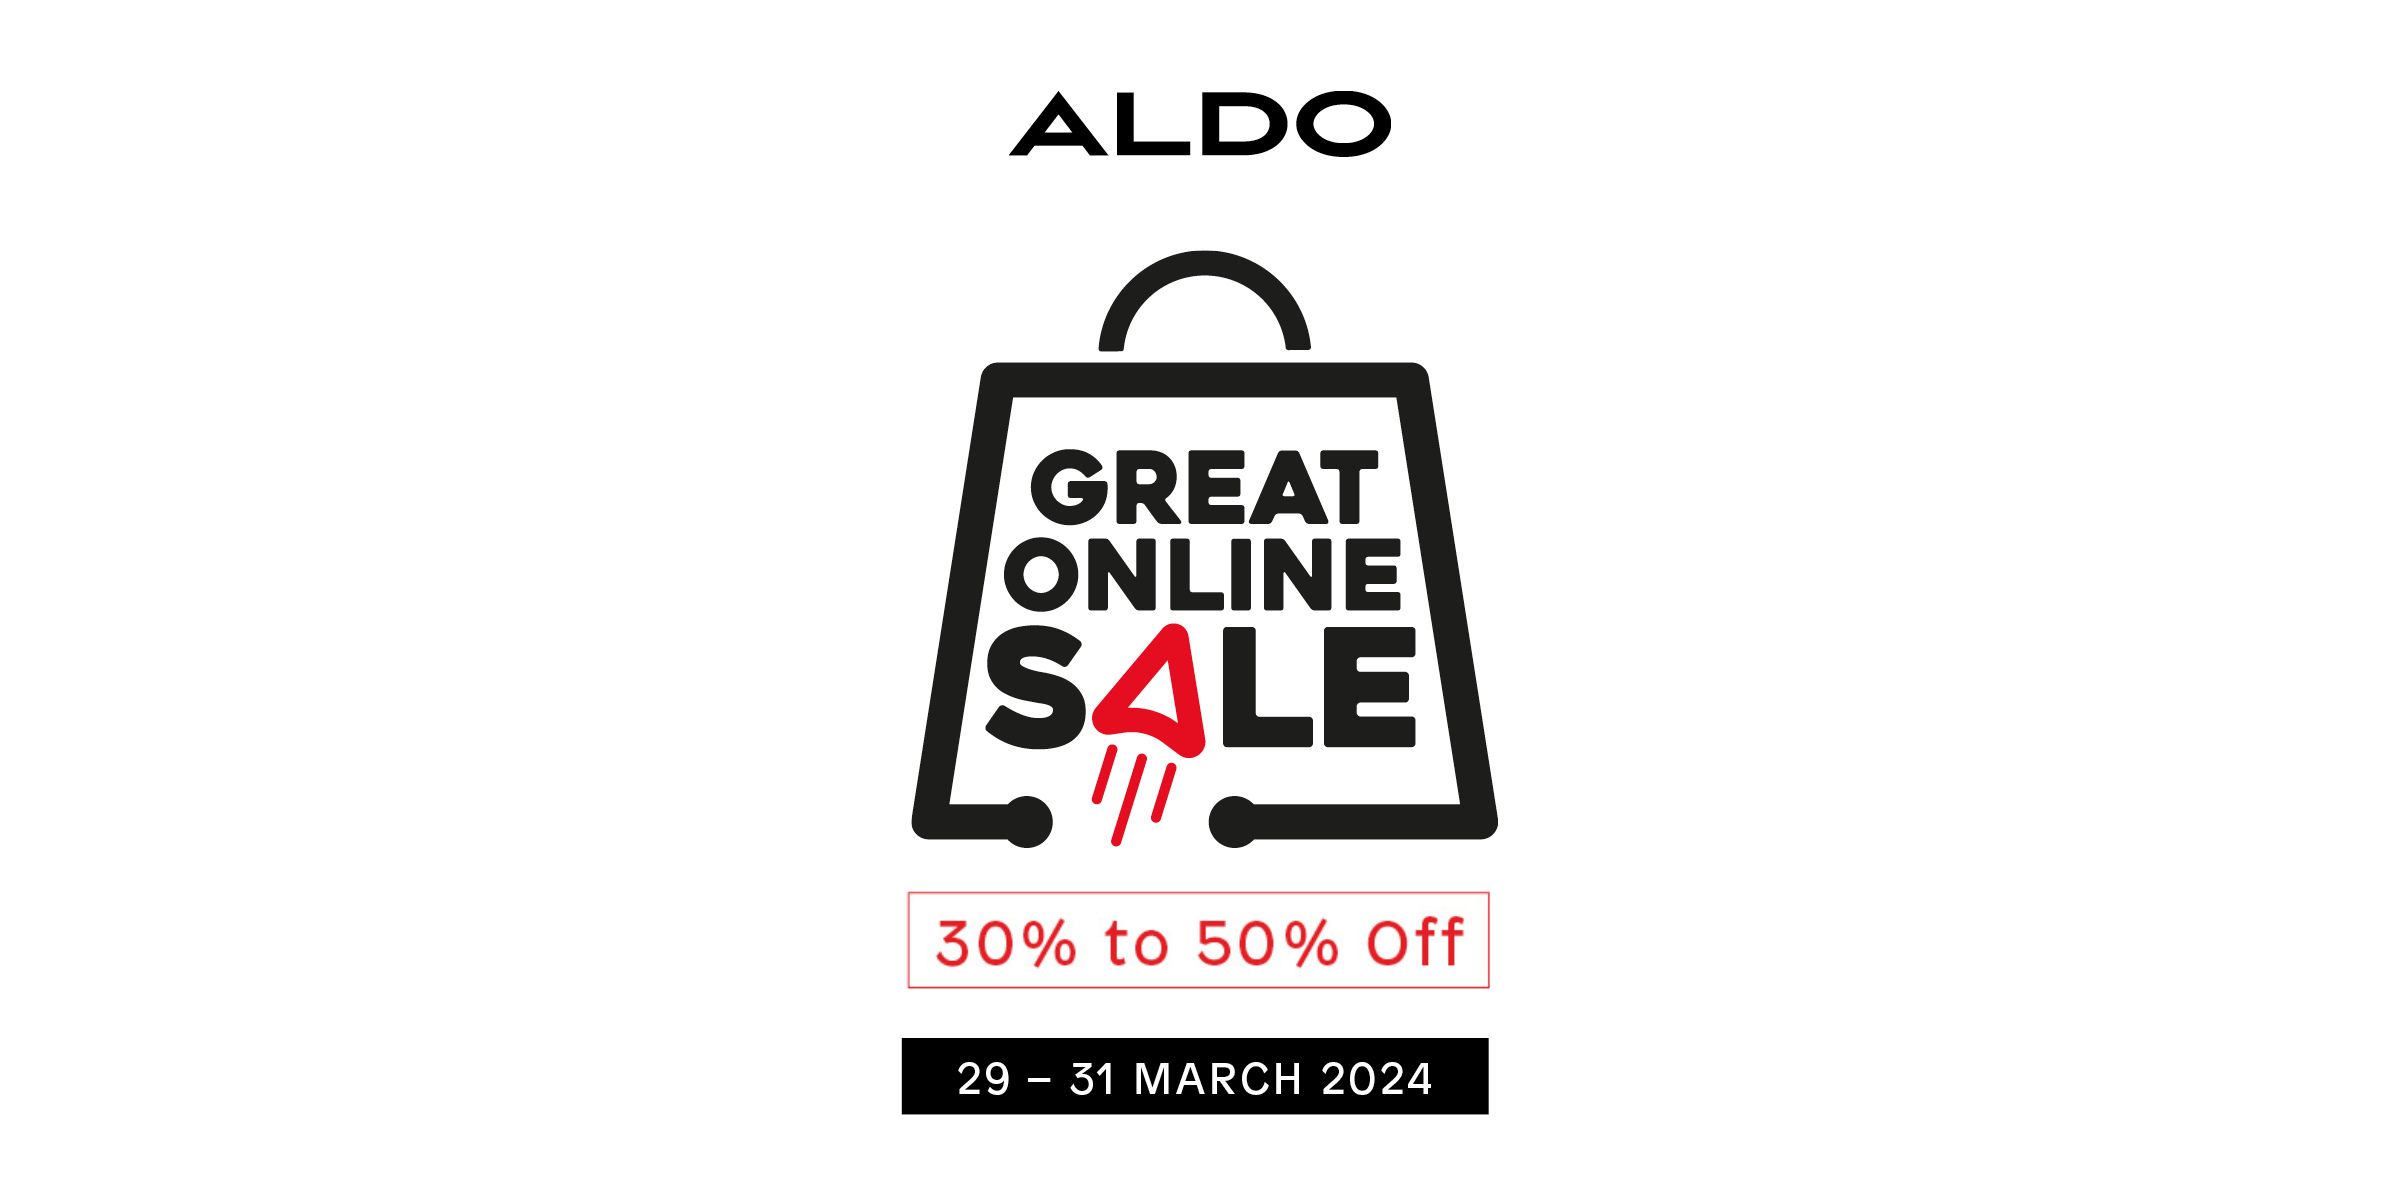 ALDO - Great Online Sale